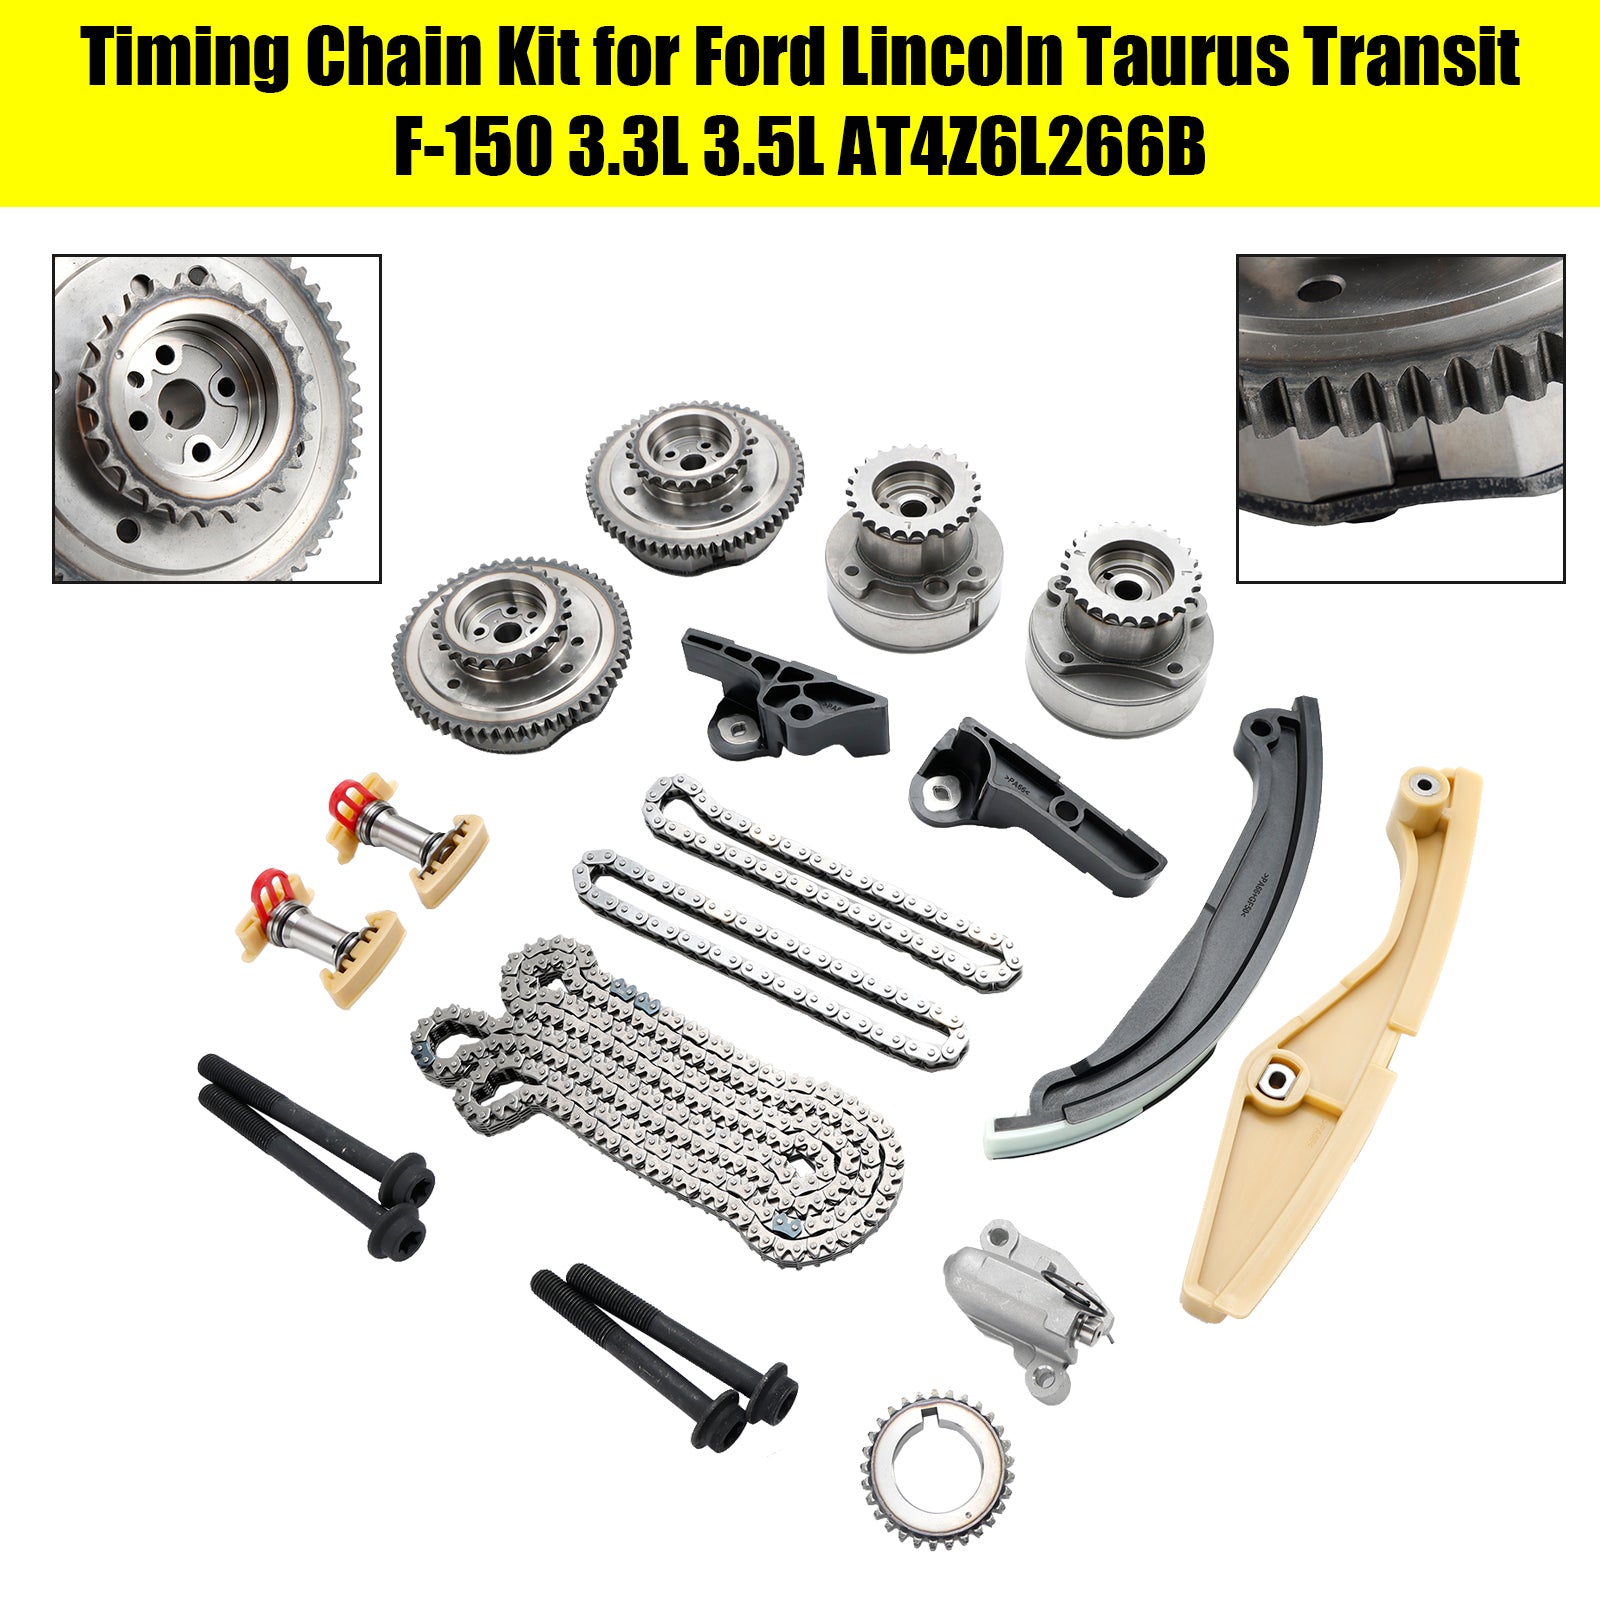 Kit de cadena de distribución para Ford Lincoln Taurus Transit F-150 3.3L 3.5L AT4Z6L266B